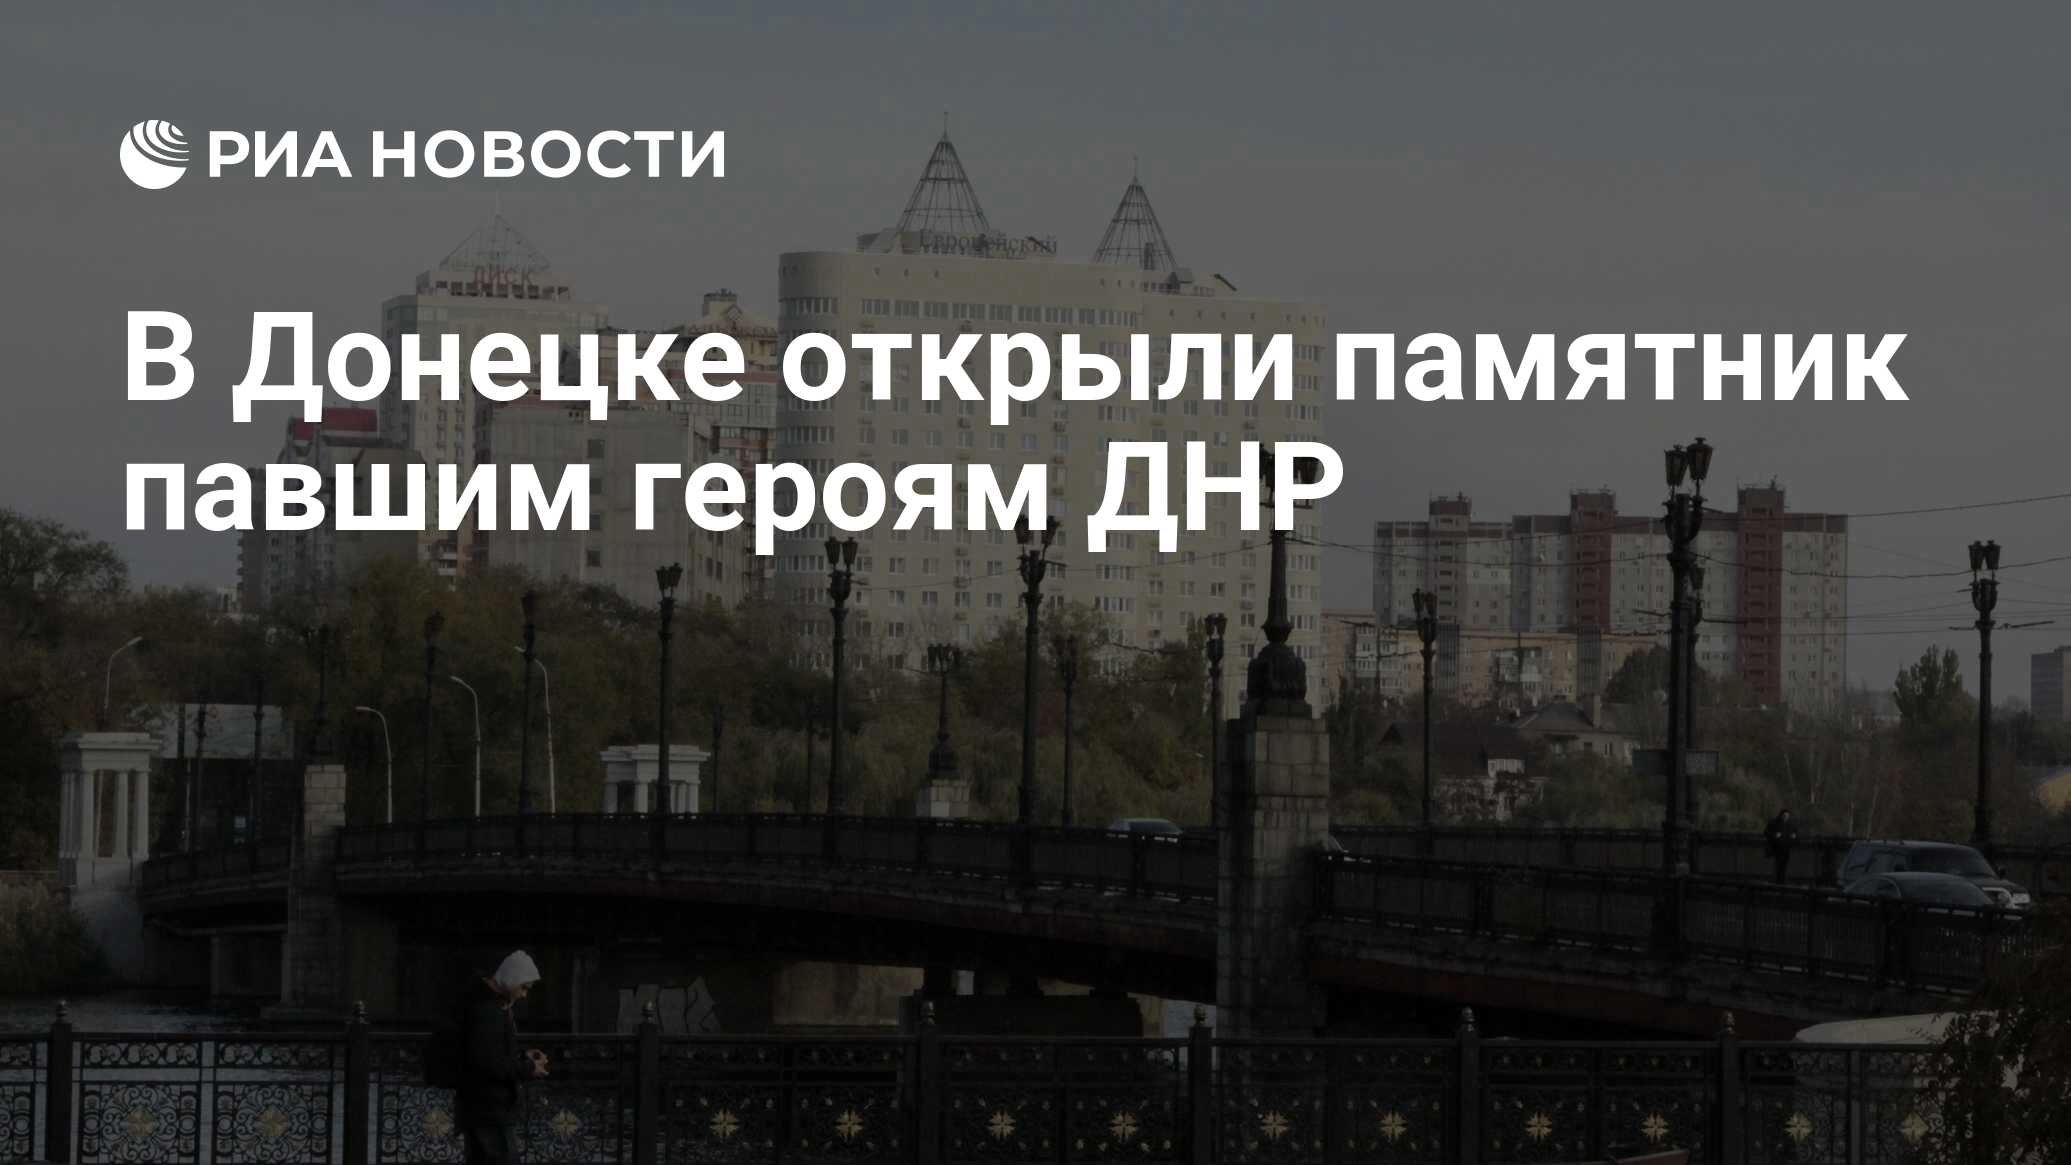 В Донецке открыли памятник павшим героям ДНР - РИА Новости, 10.05.2021